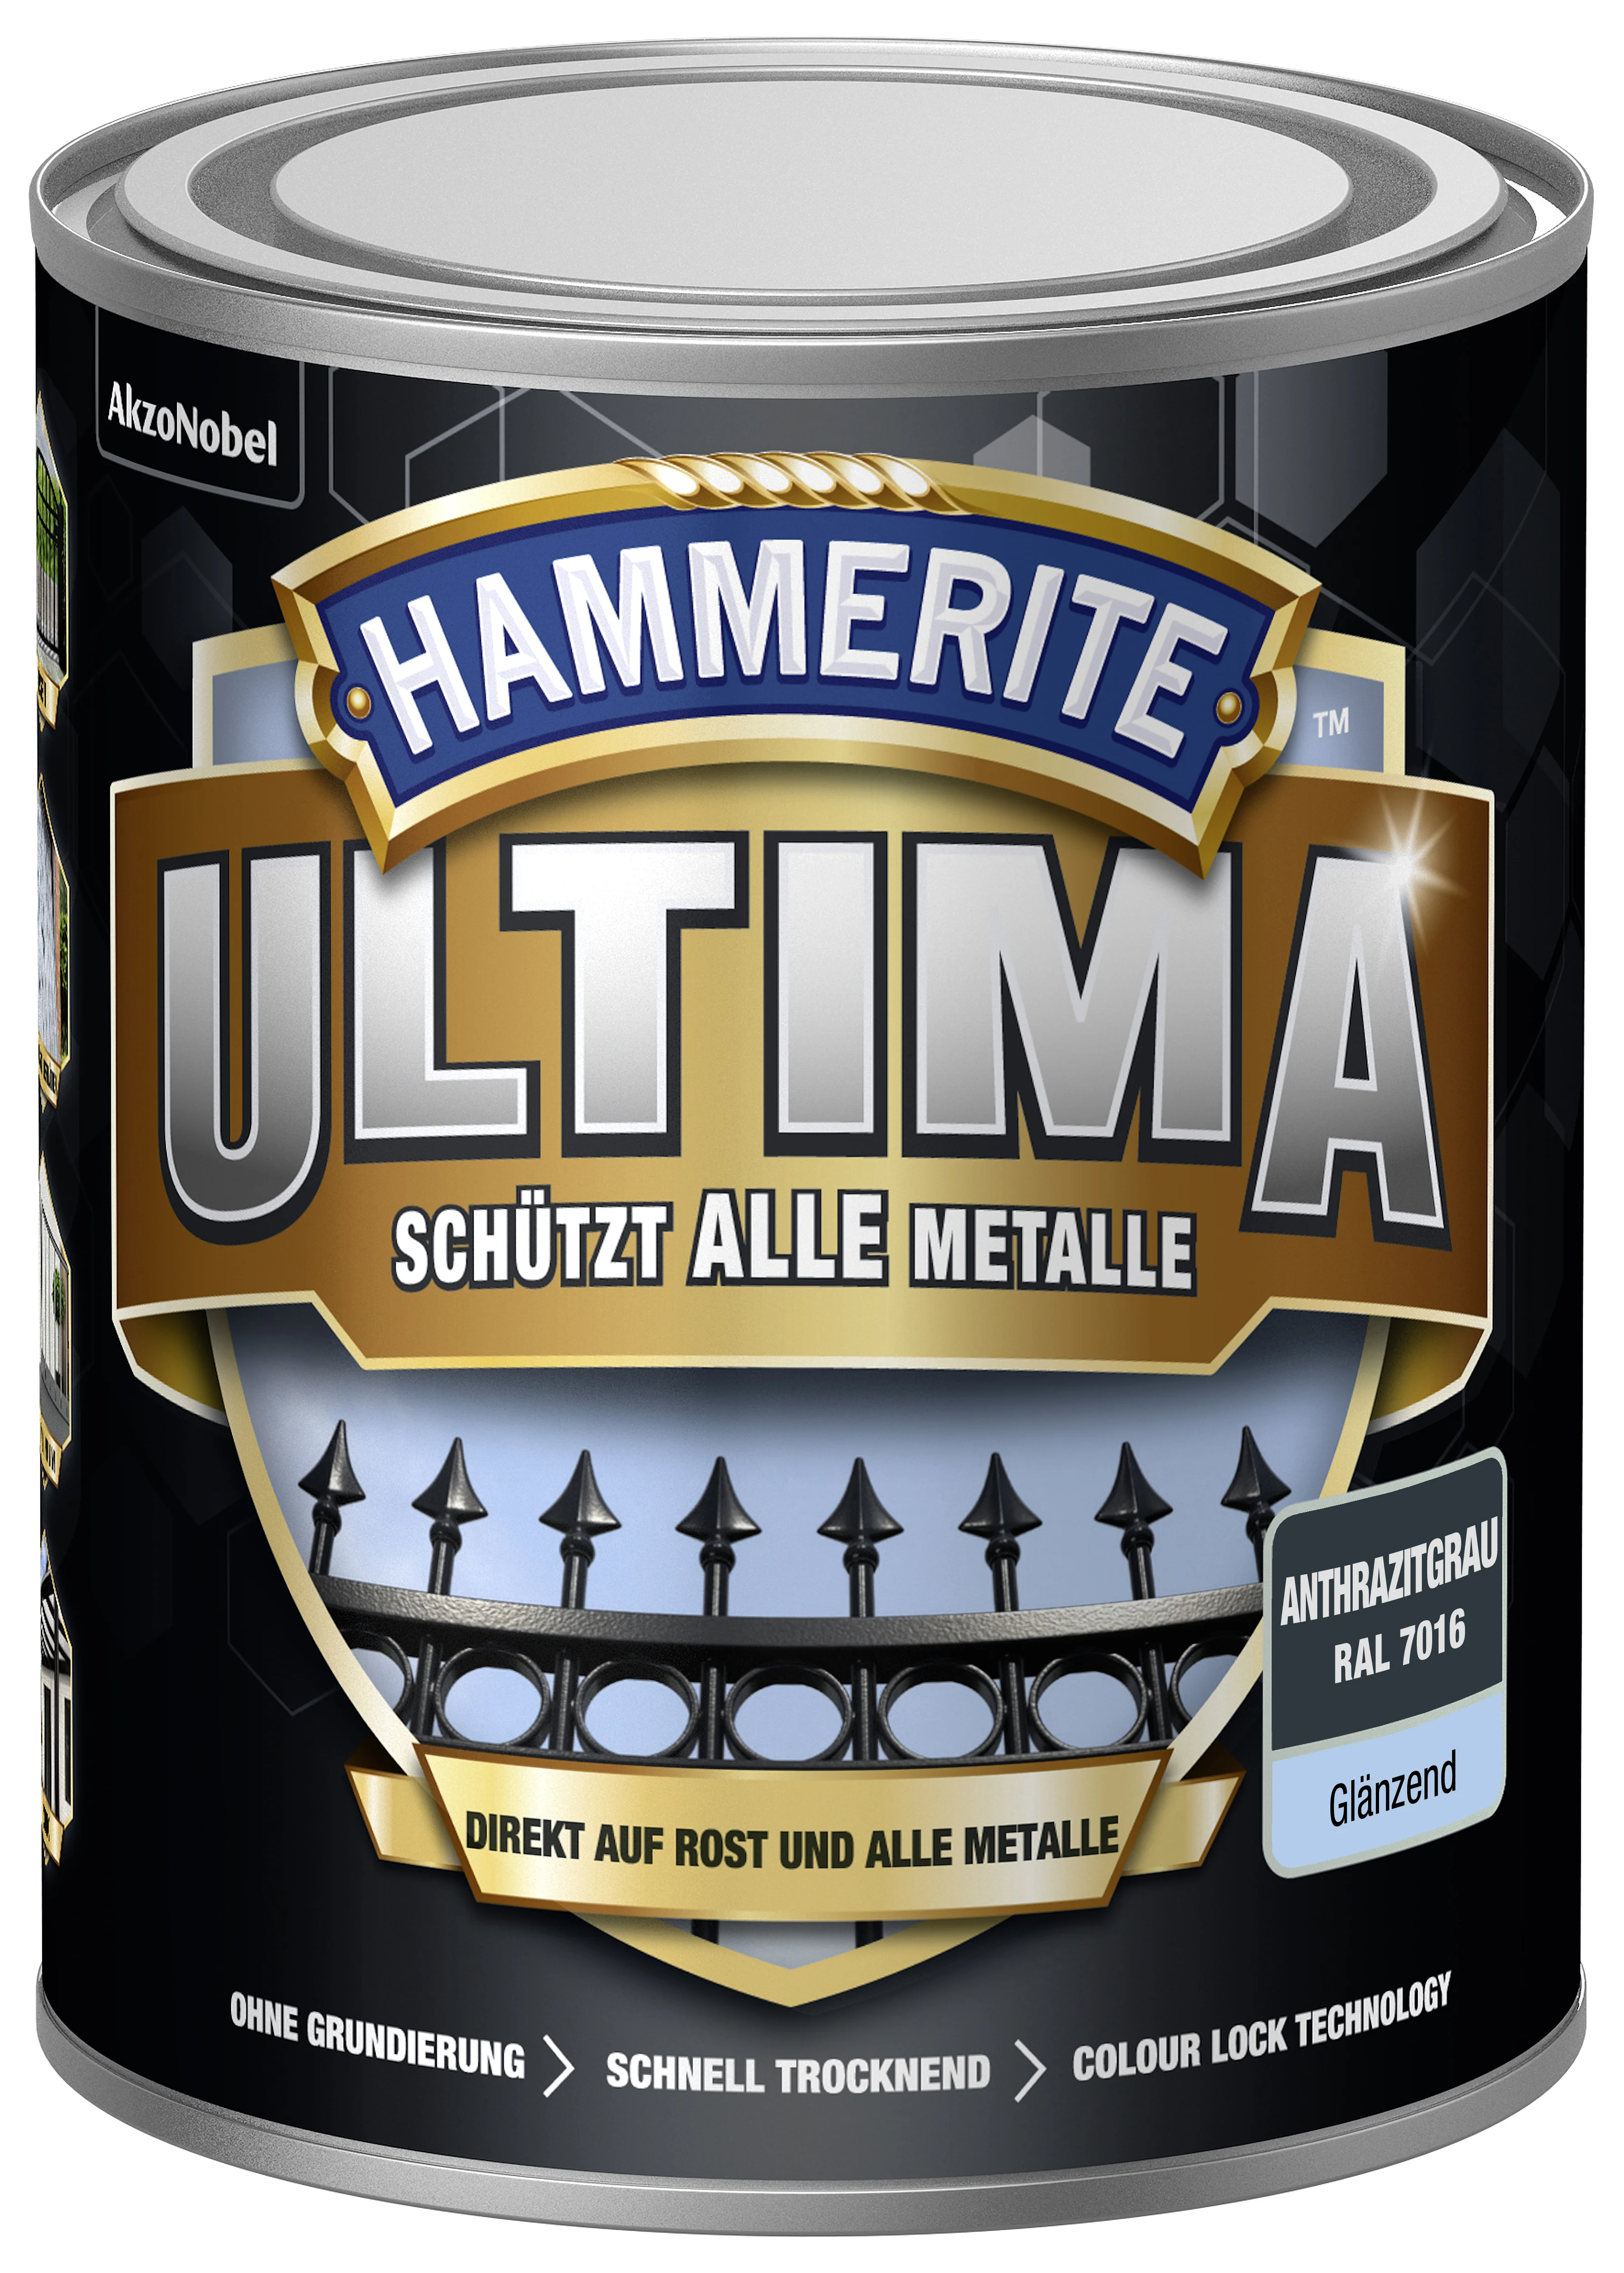 Hammerite Ultima Metallschutzlack Anthrazitgrau glänzend 750 ml